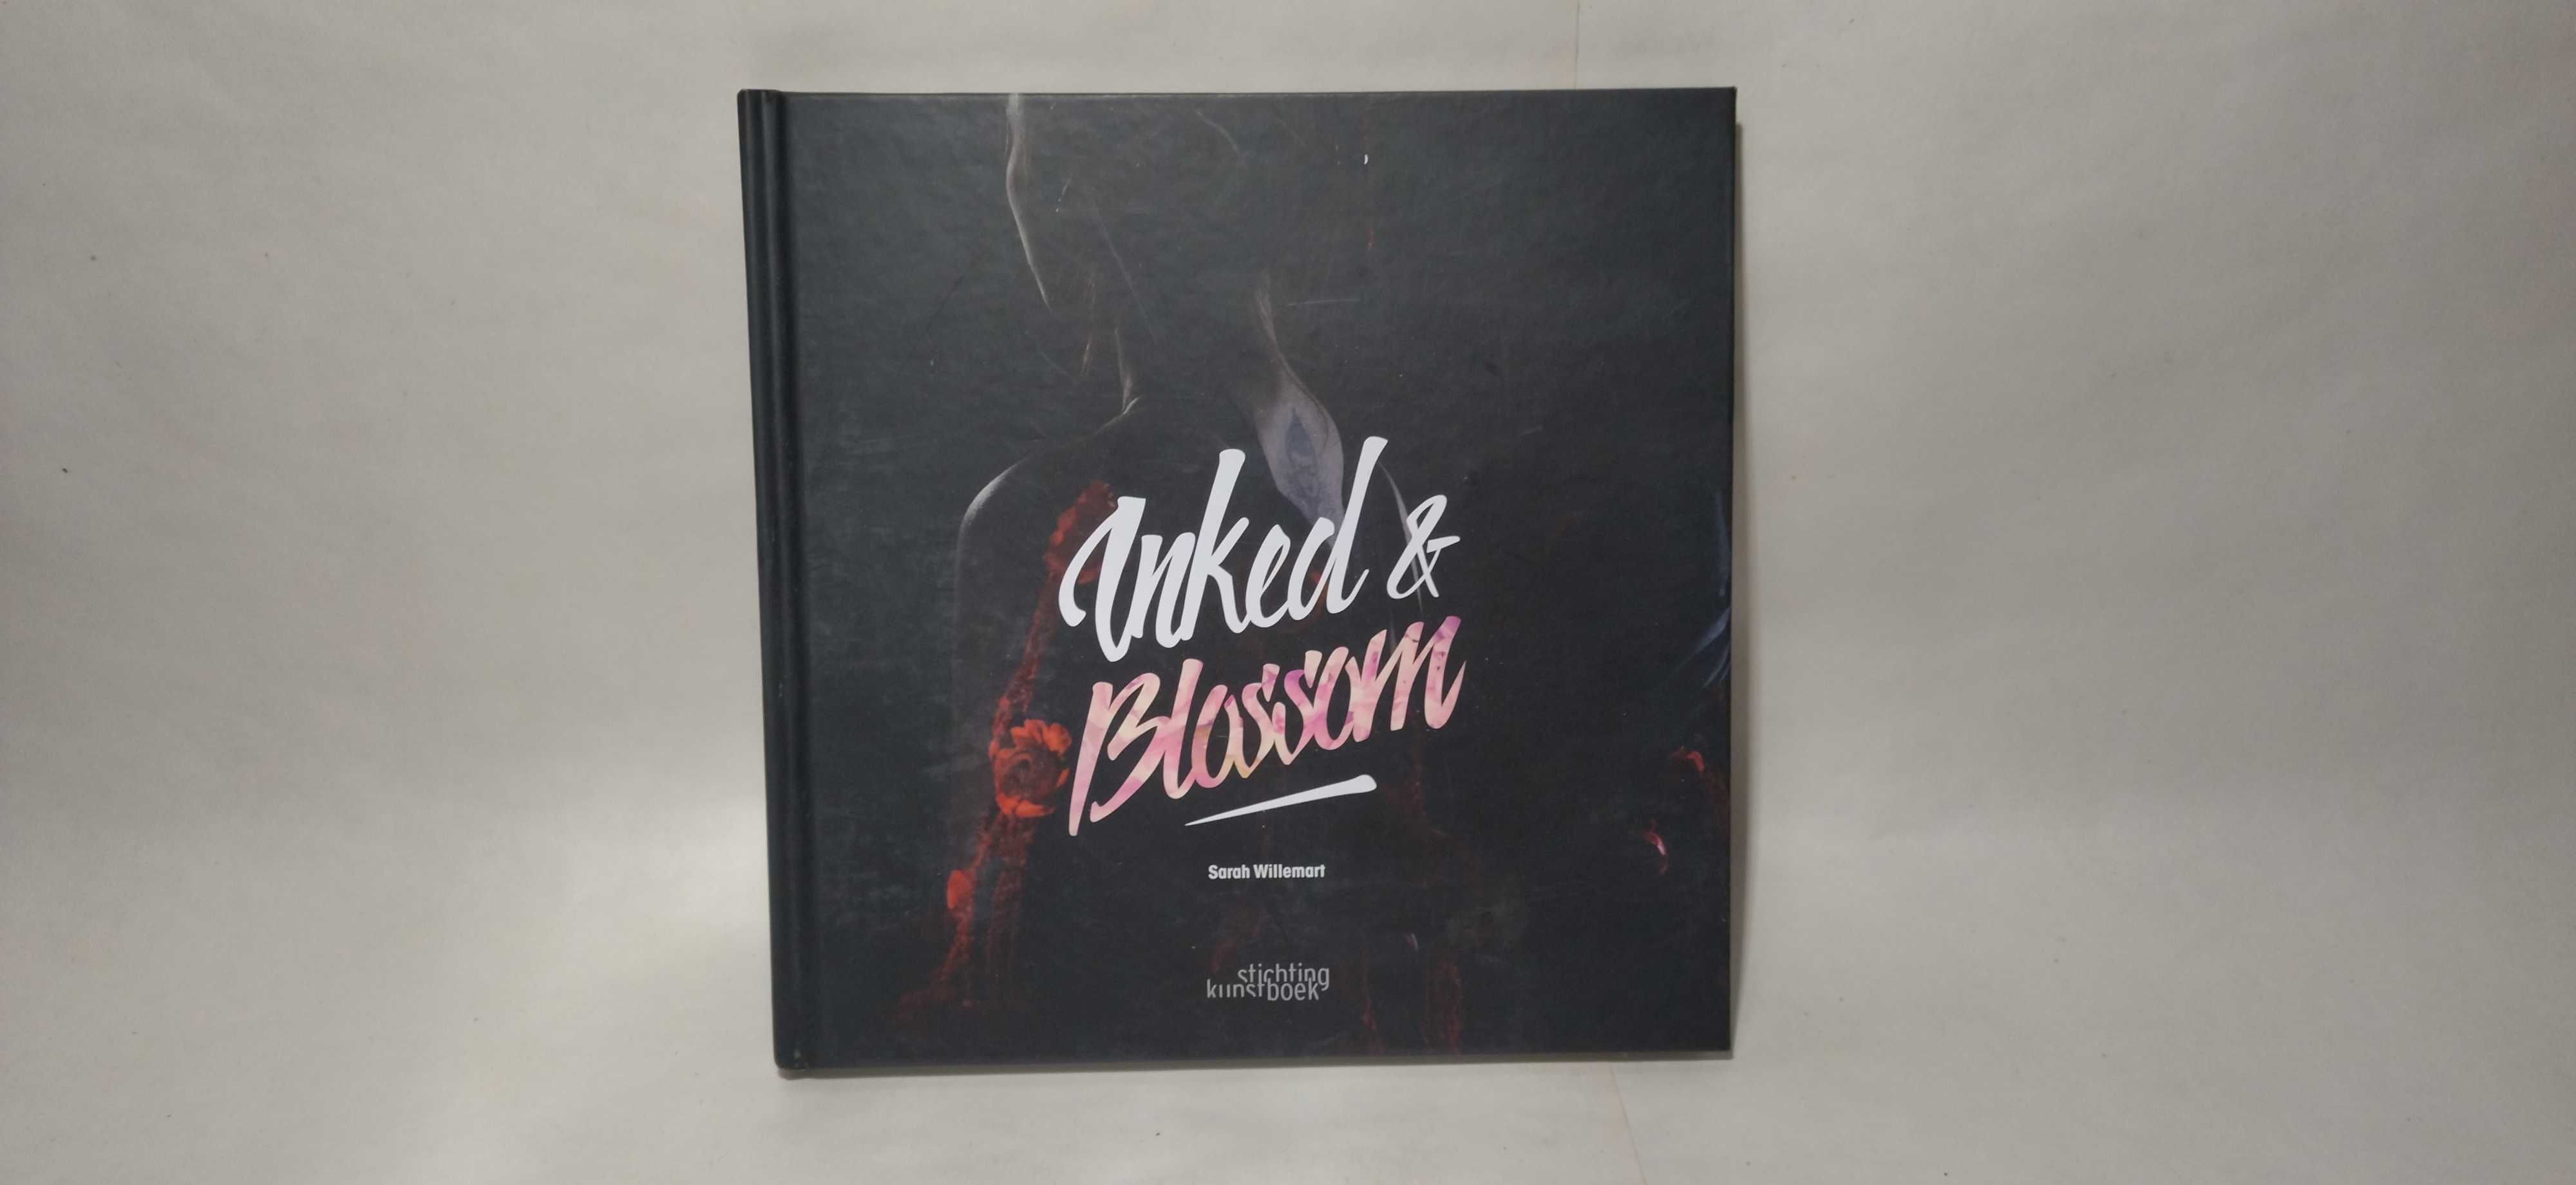 Эротический альбом Флоризм Inked & Blossom,бодиарт эротическая книга